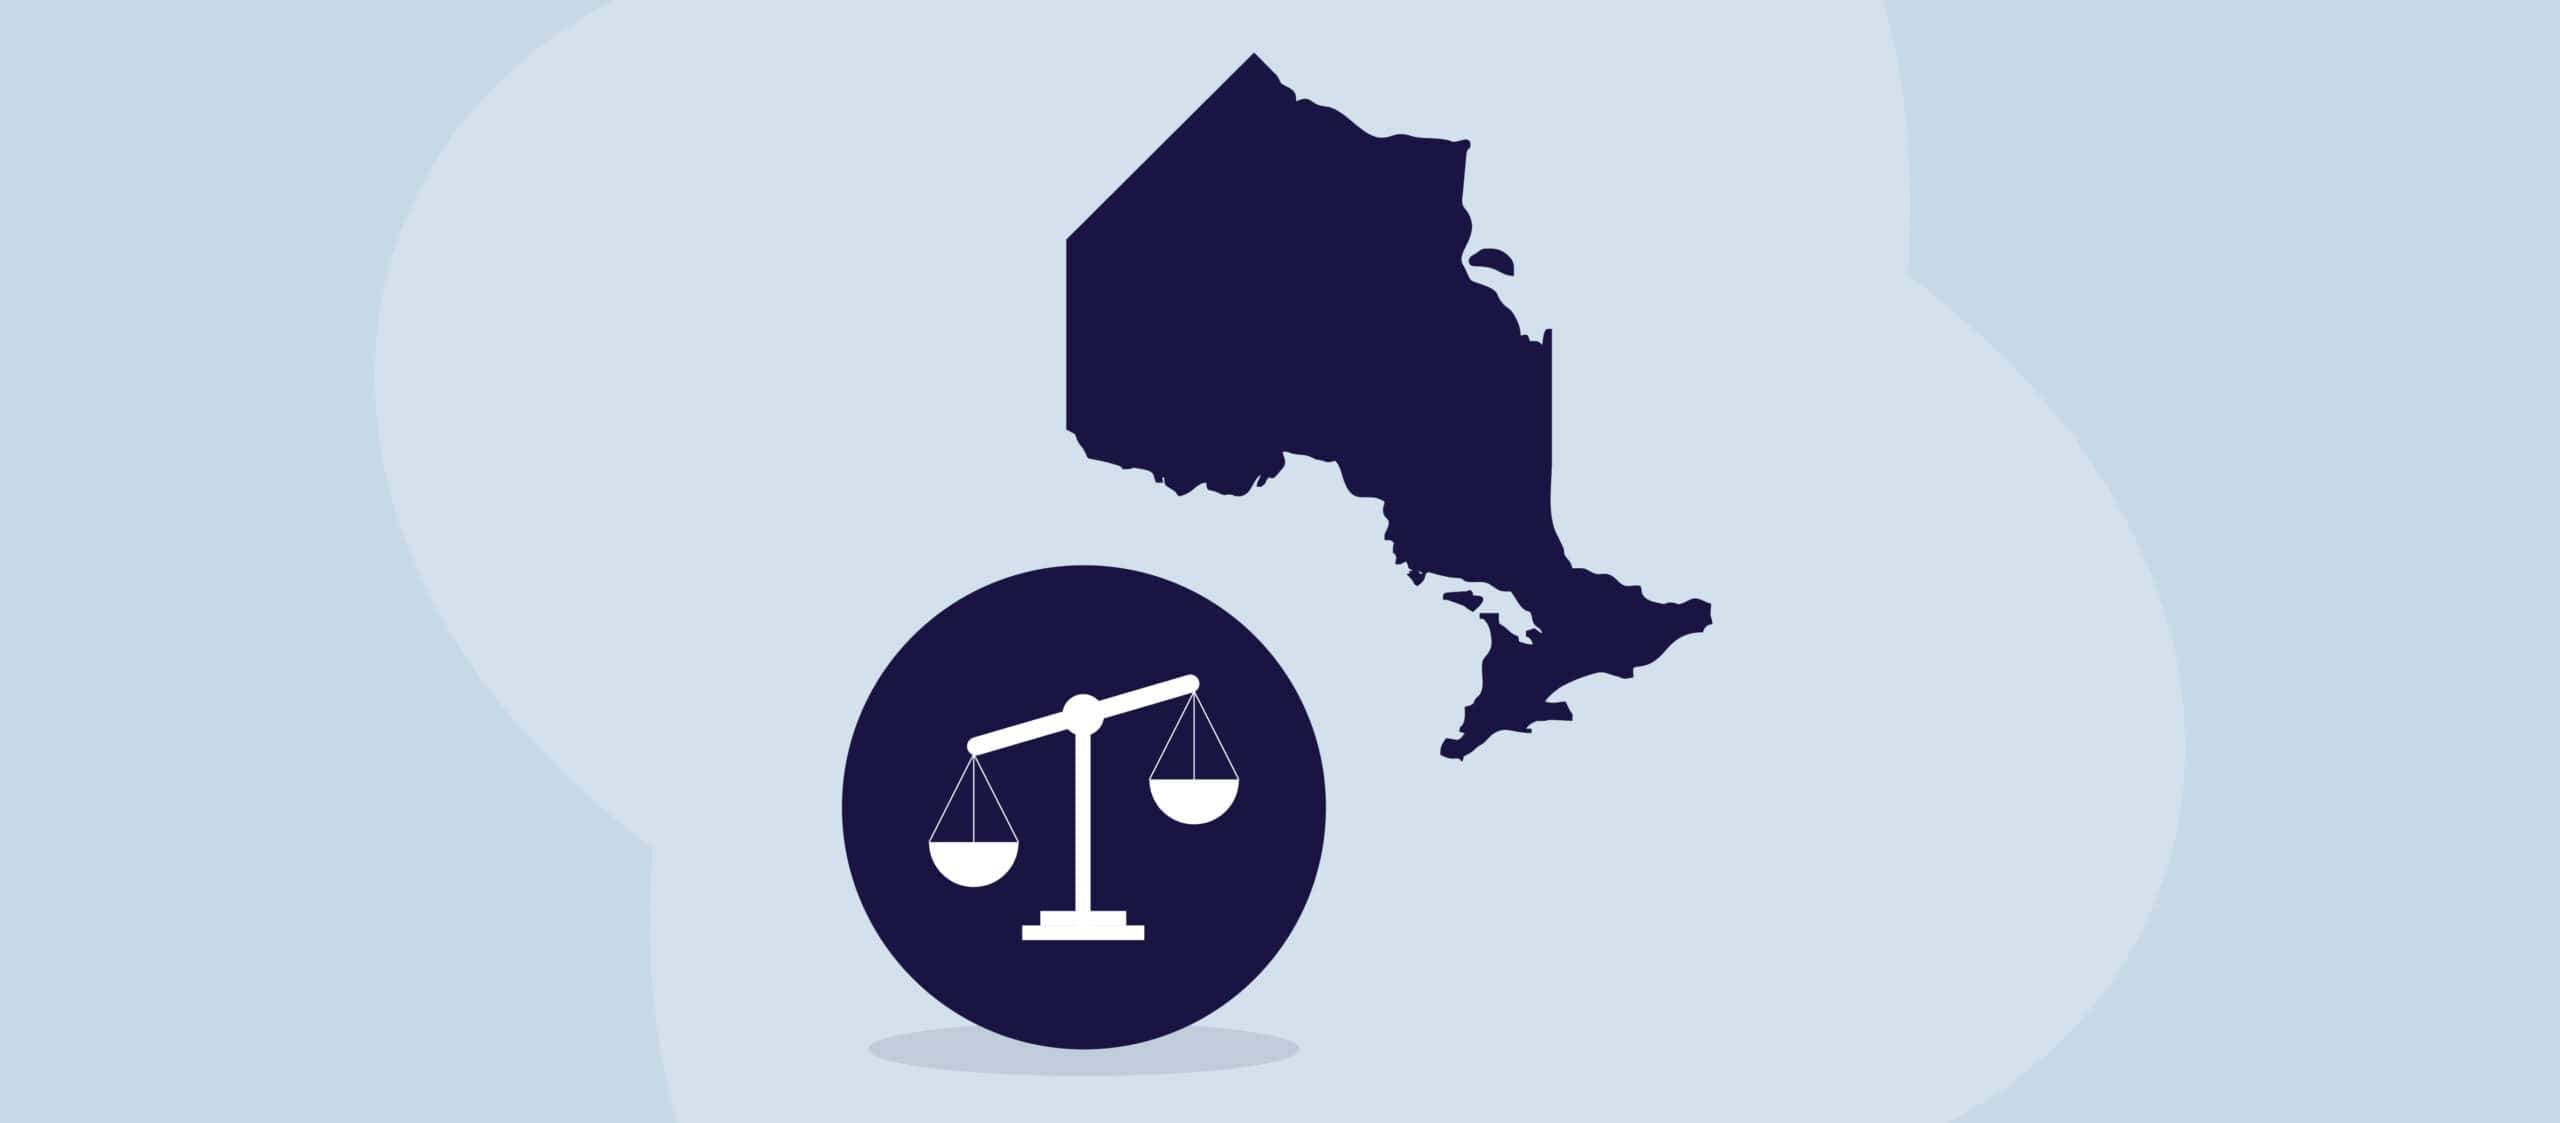 Eine Illustration der Provinz Ontario neben einem juristischen Maßstab.